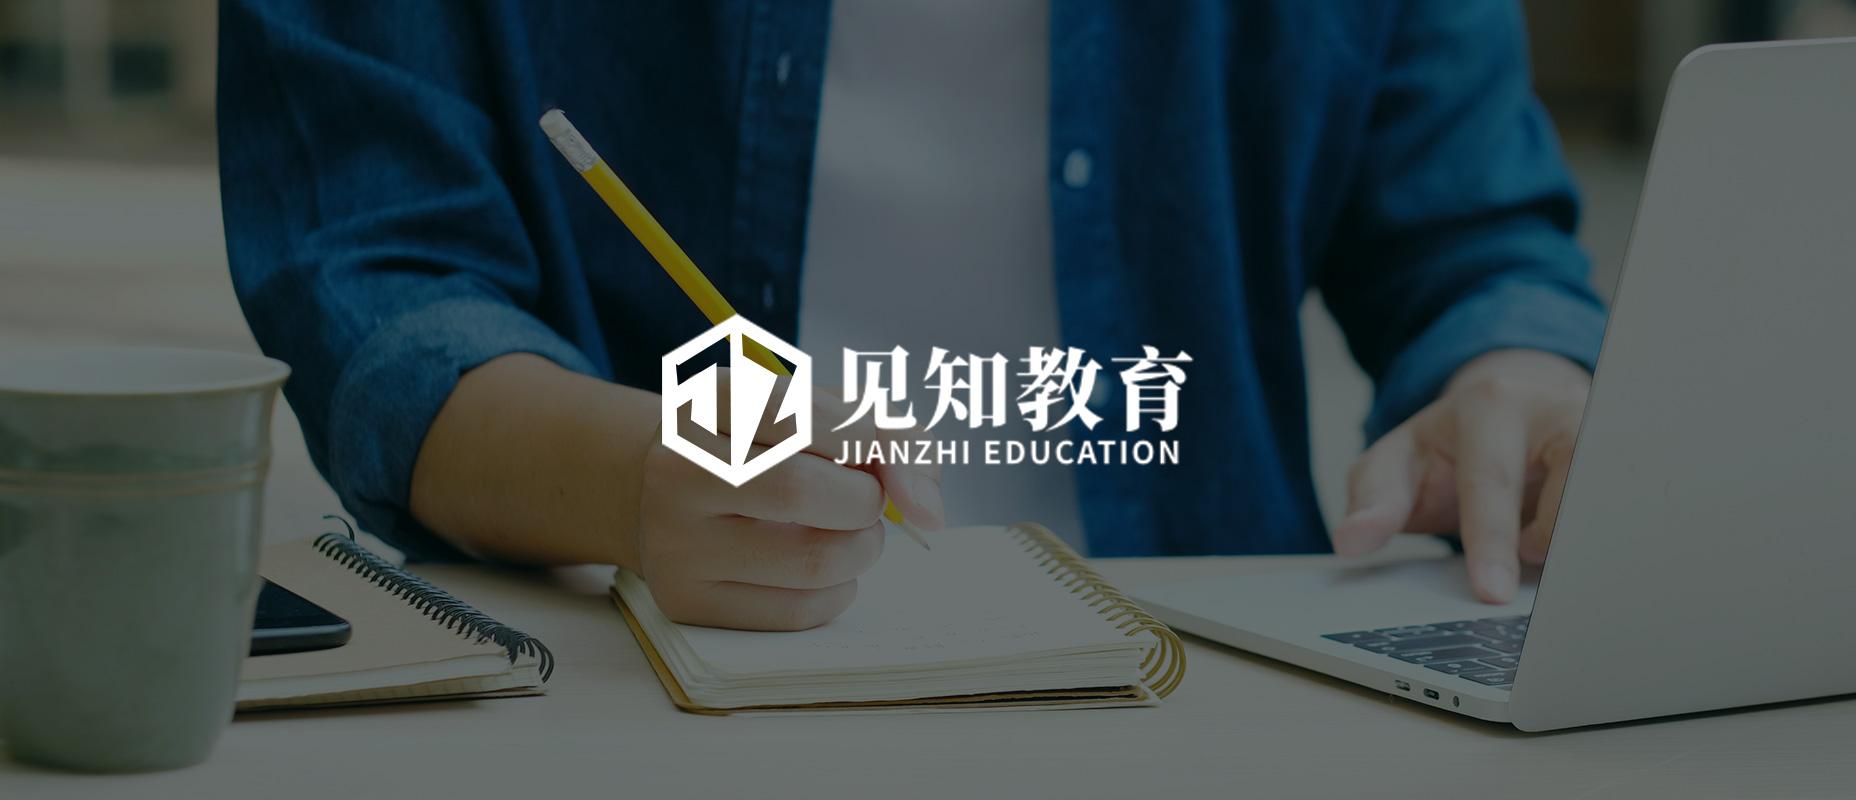 IPO technologii edukacyjnej Jianzhi: platforma edukacyjna z Chin